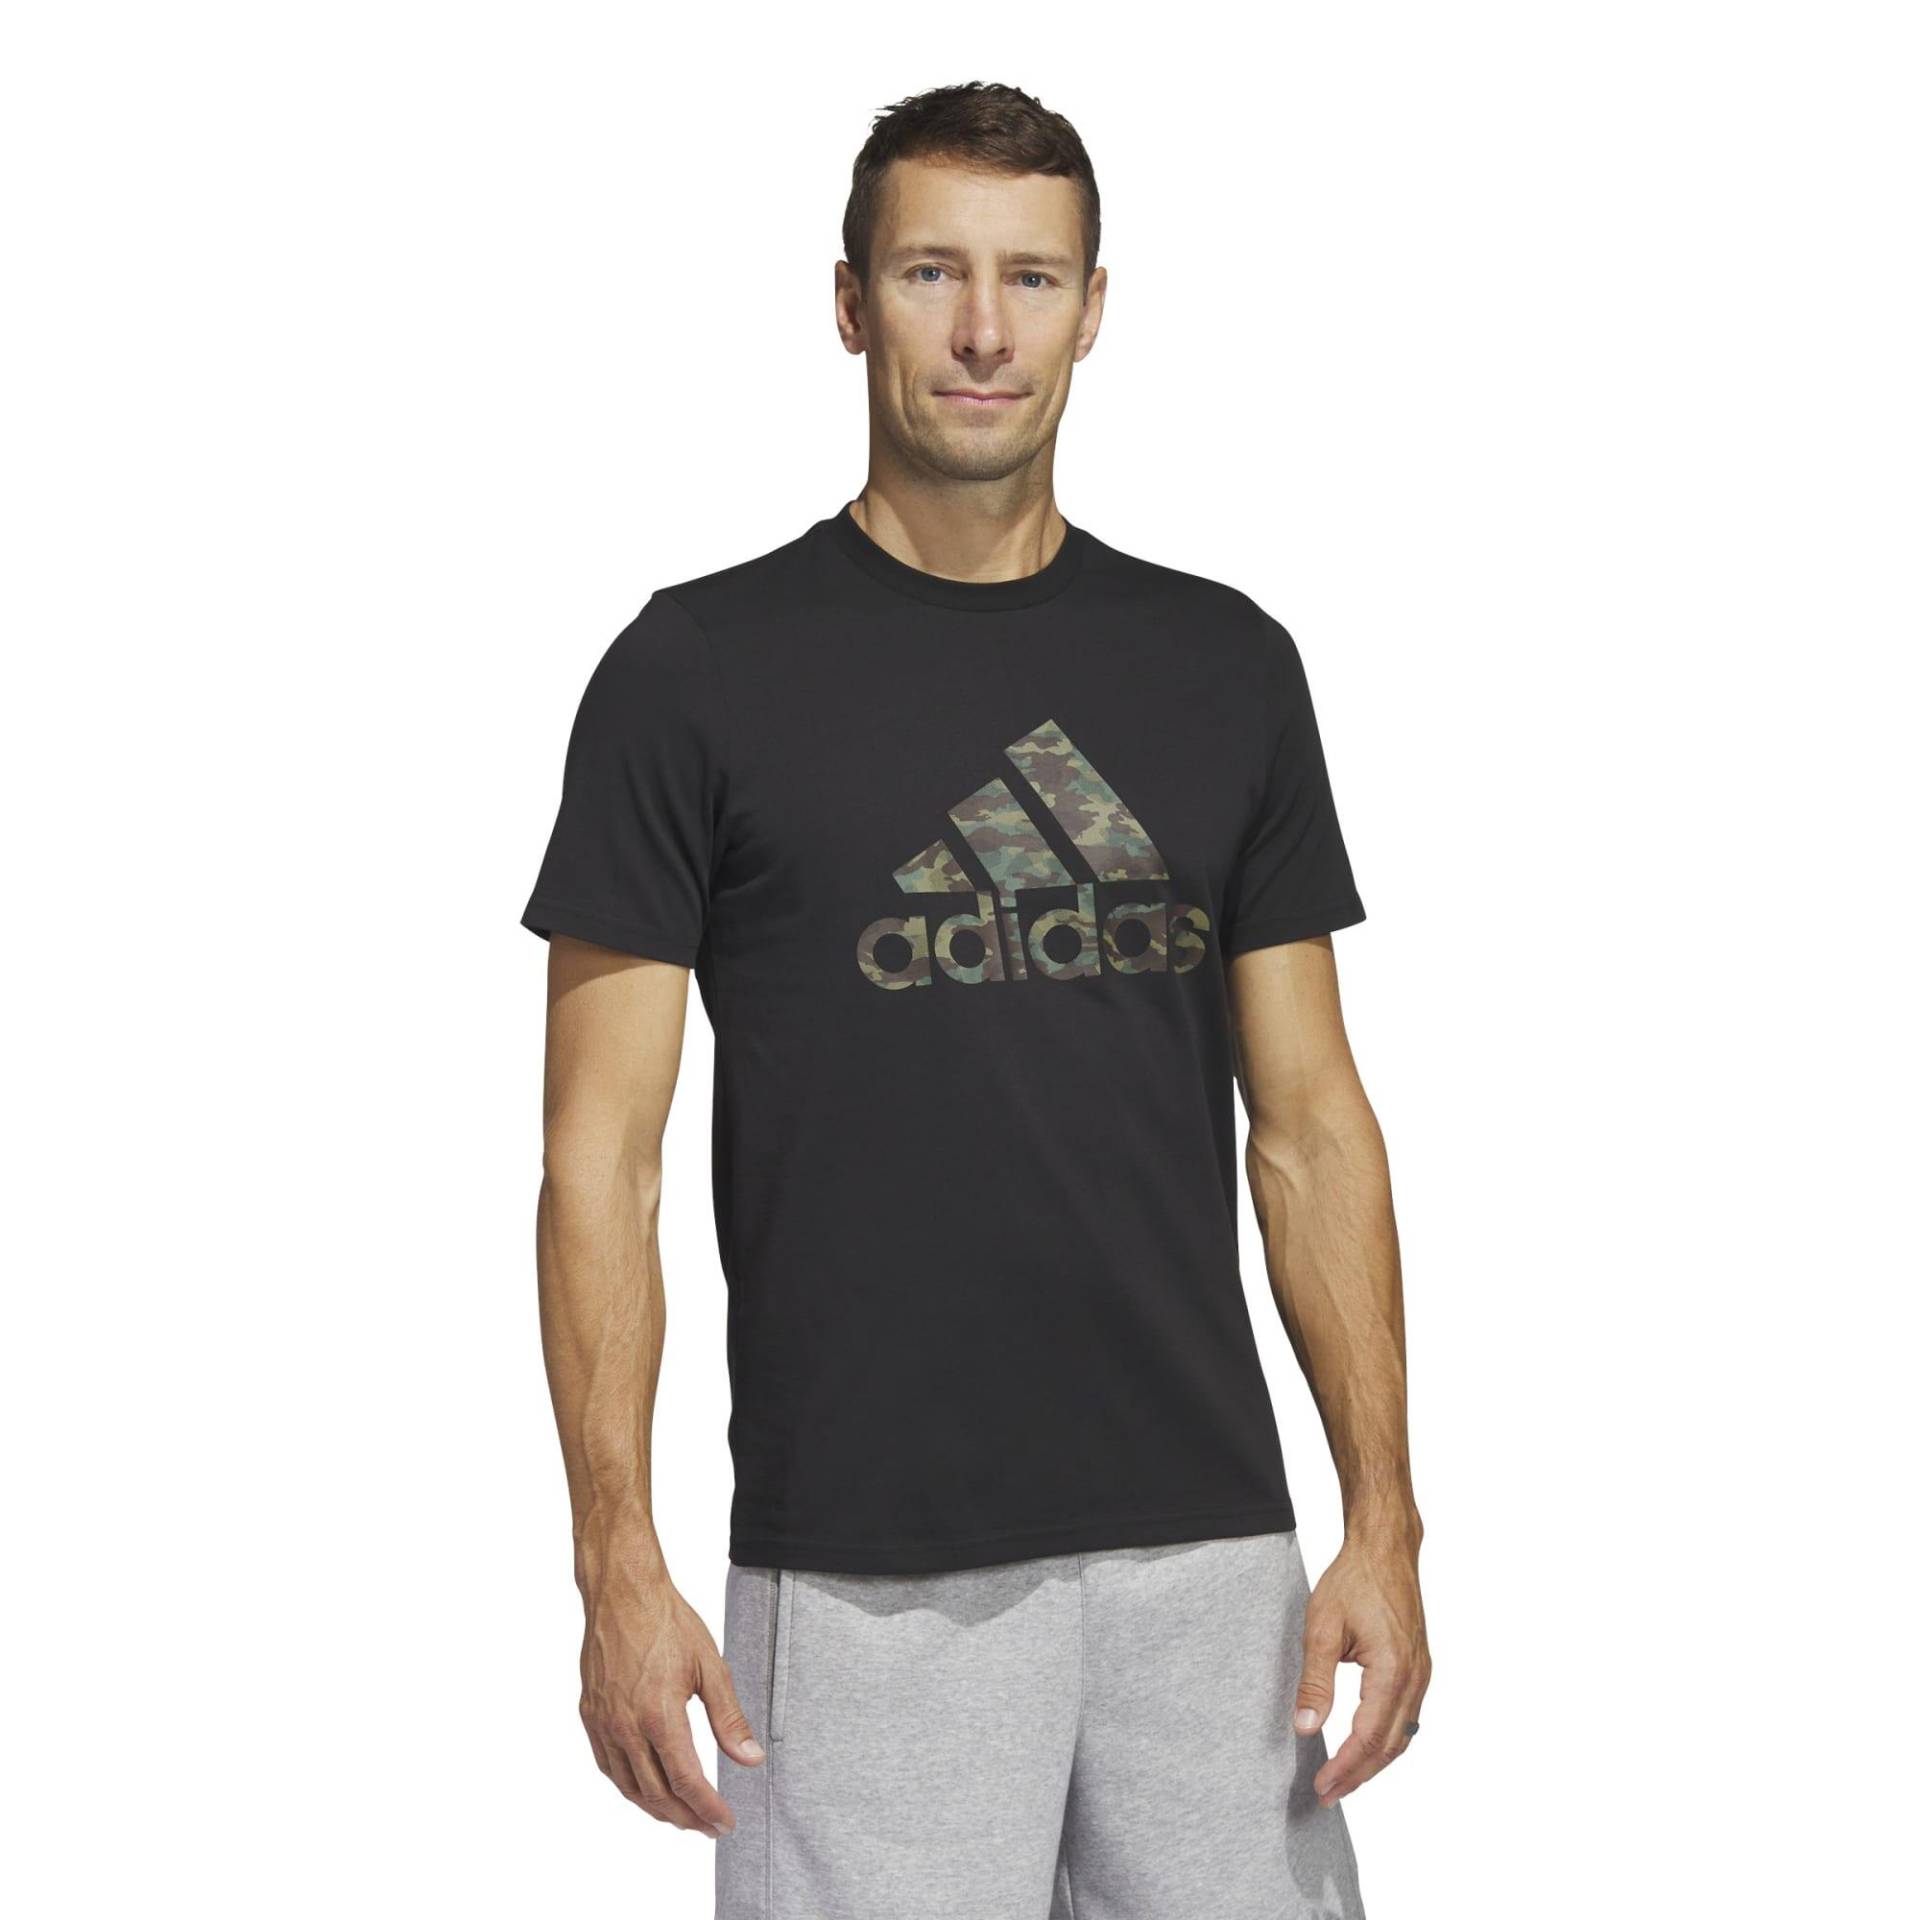 Adidas T-Shirt Herren - Camo schwarz von Adidas